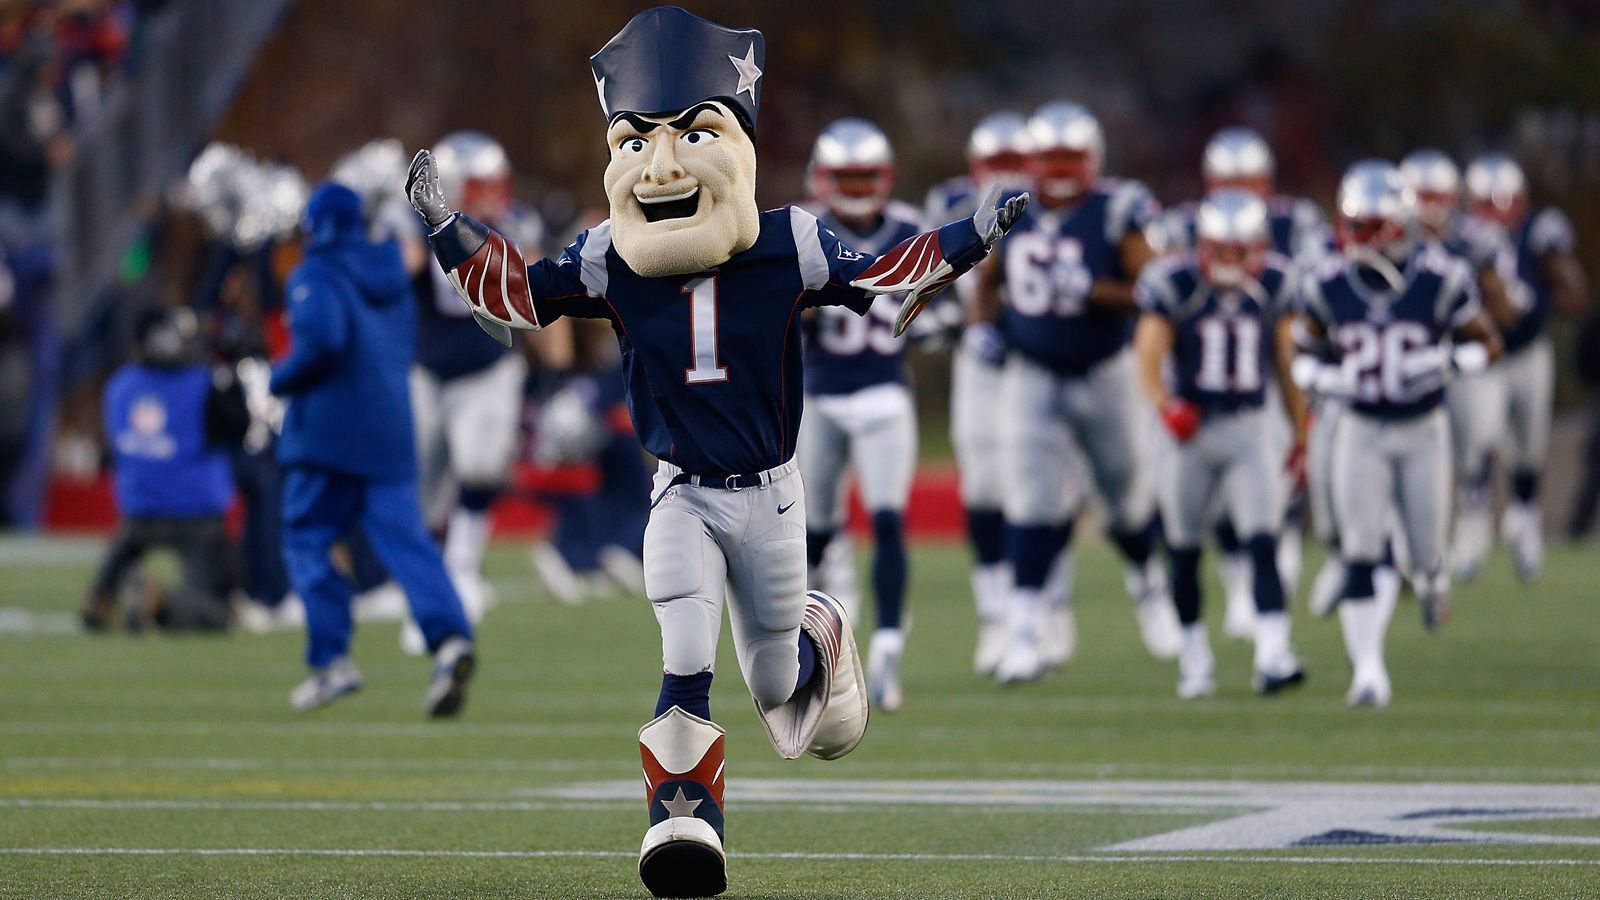 
                <strong>New England Patriots: Pat Patriot</strong><br>
                Pat Patriot führt das Belichick-Team in die Schlacht. Das Maskottchen trägt eine Uniform aus den Zeiten der amerikanischen Revolution mit dem typischen Dreispitz.
              